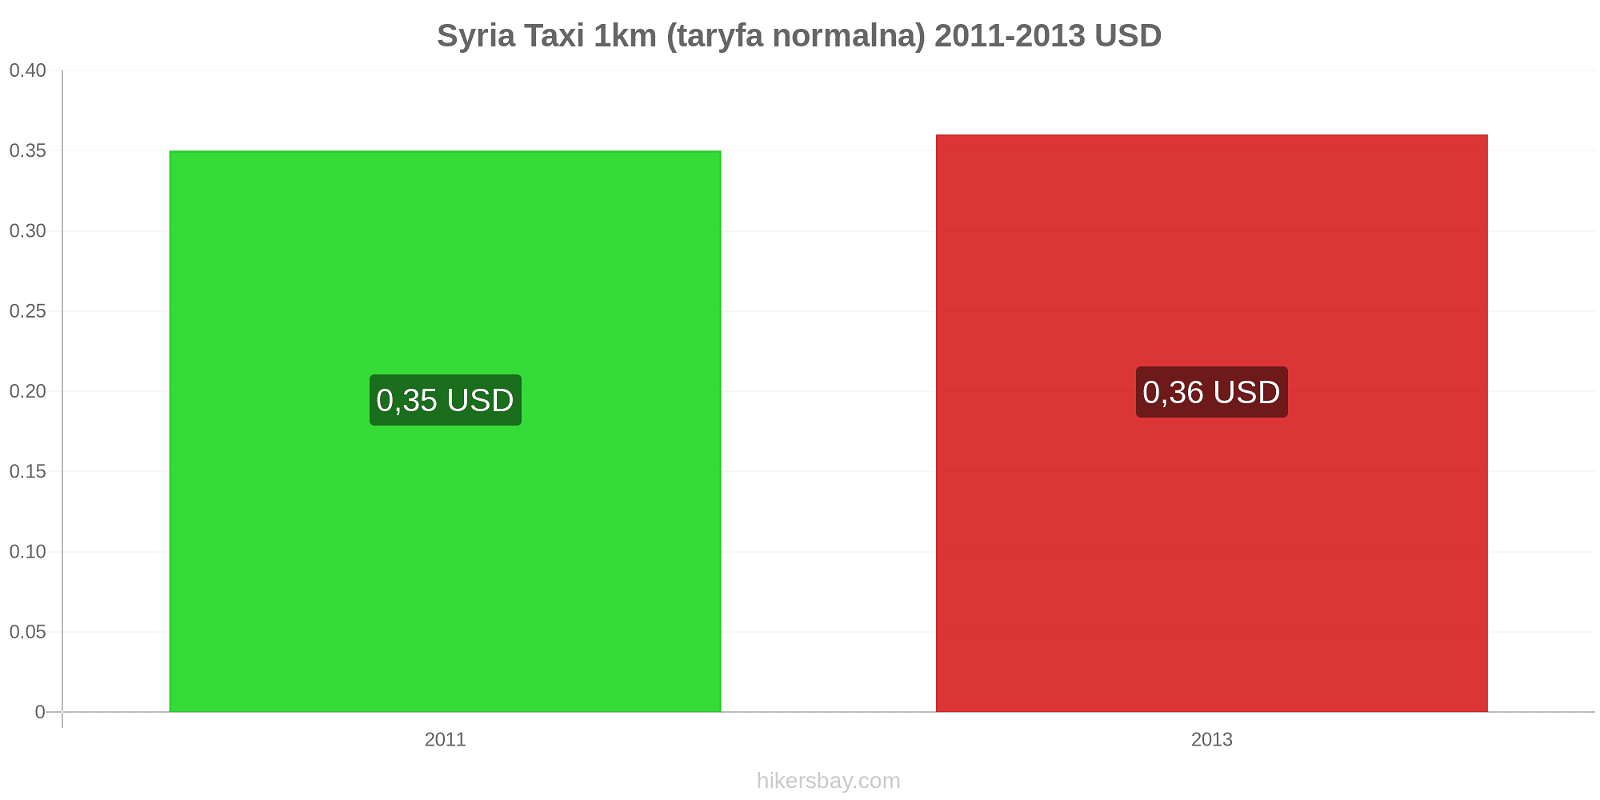 Syria zmiany cen Taxi 1km (taryfa normalna) hikersbay.com